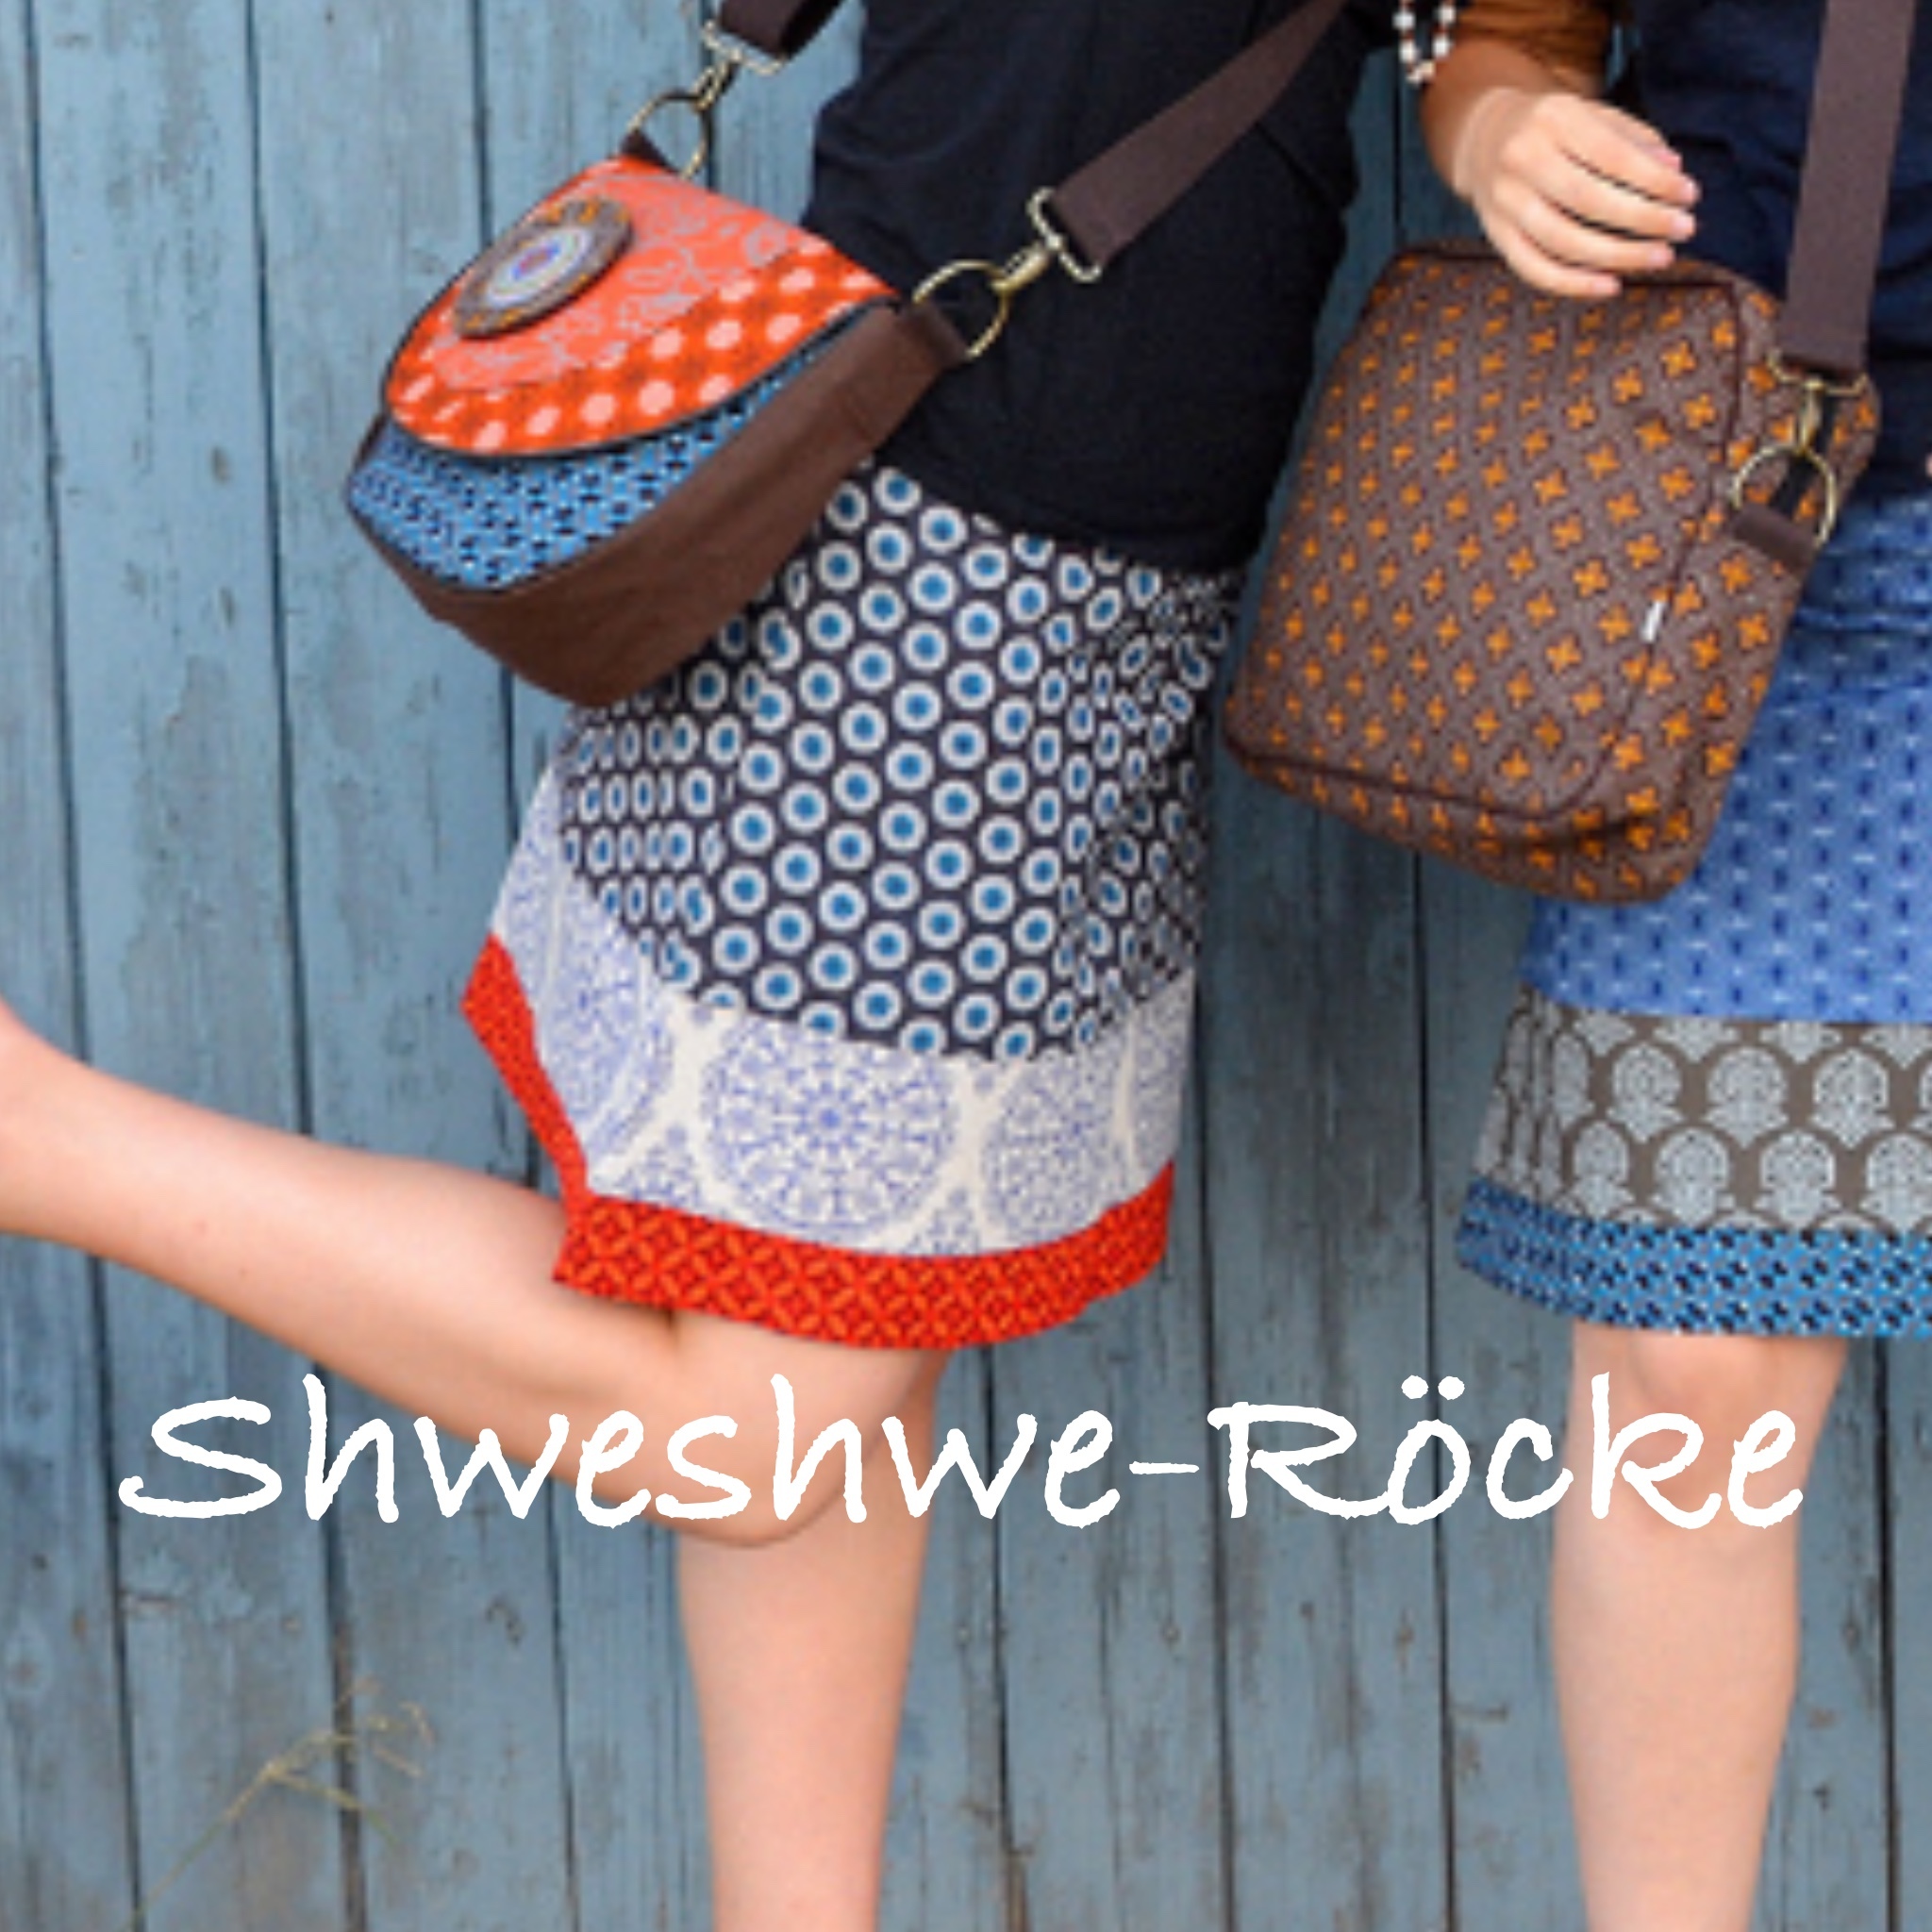 Shweshwe-skirts